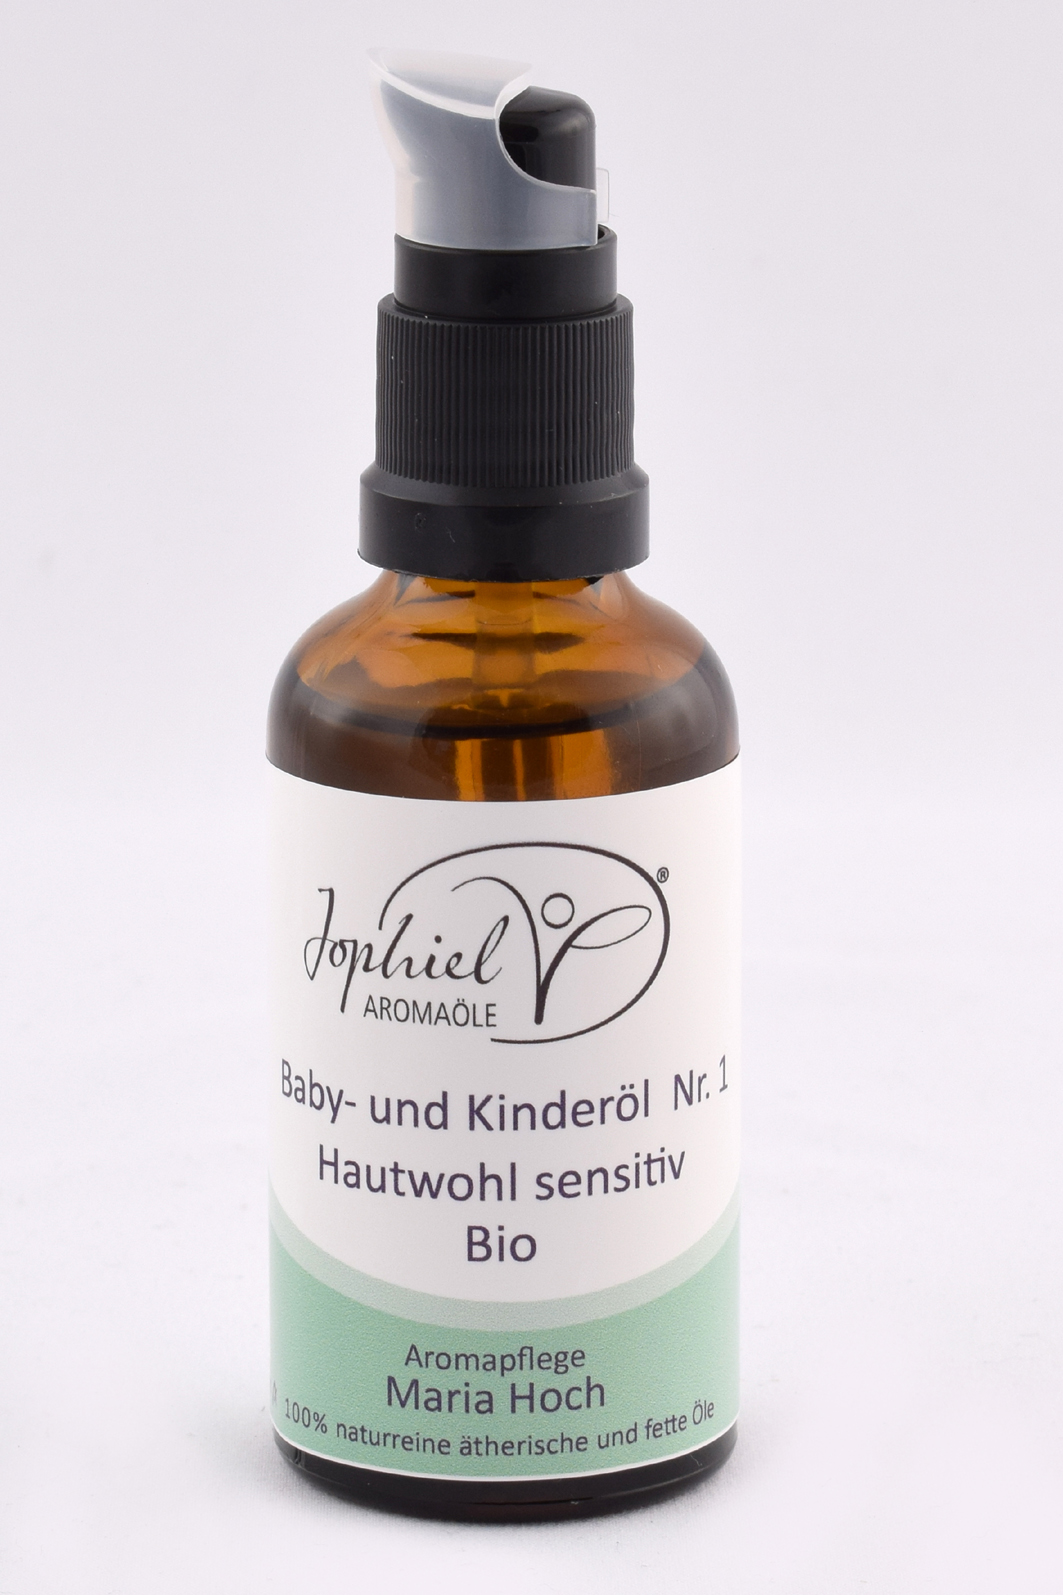 Baby- und Kinderöl Nr. 1 Hautwohl sensitiv Bio 50 ml